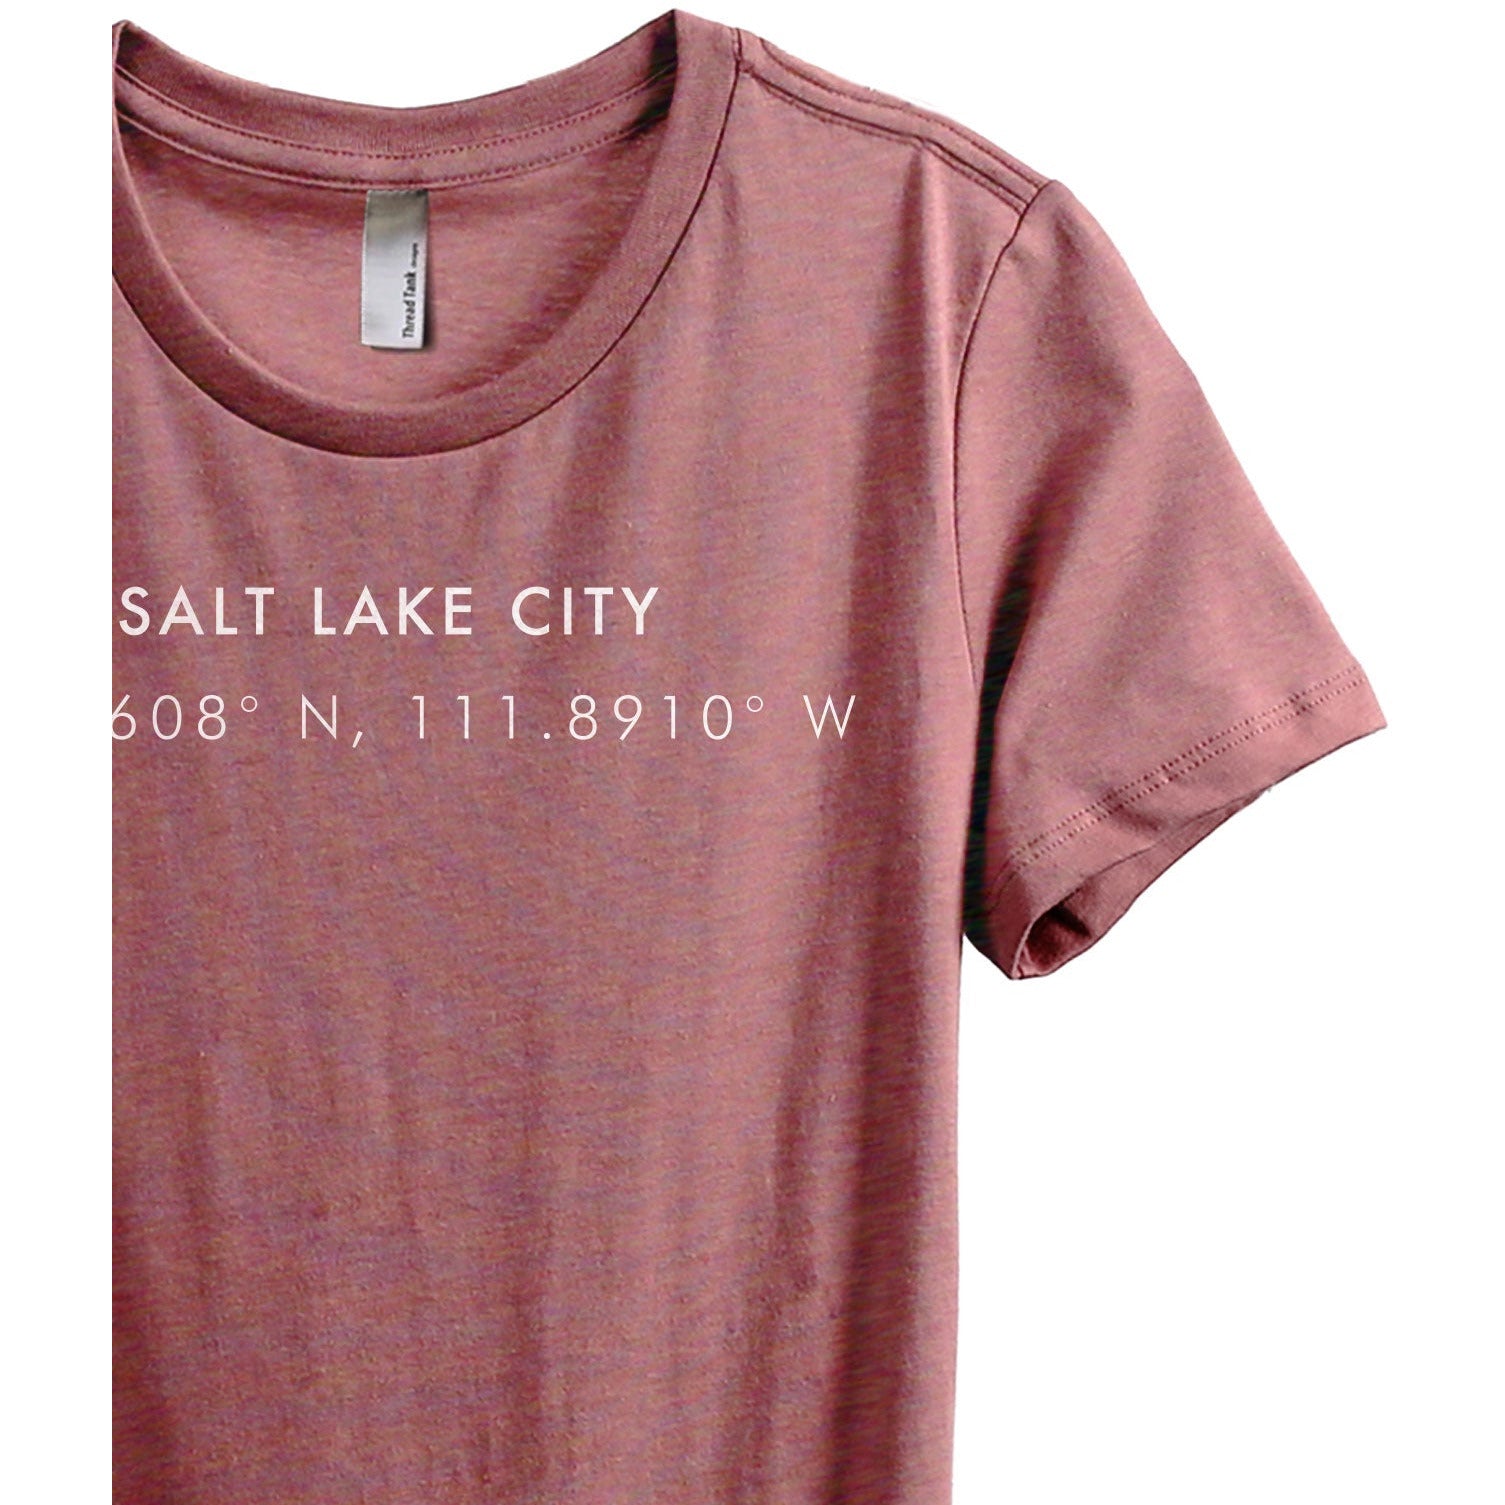 Salt Lake City Utah Coordinates - Stories You Can Wear